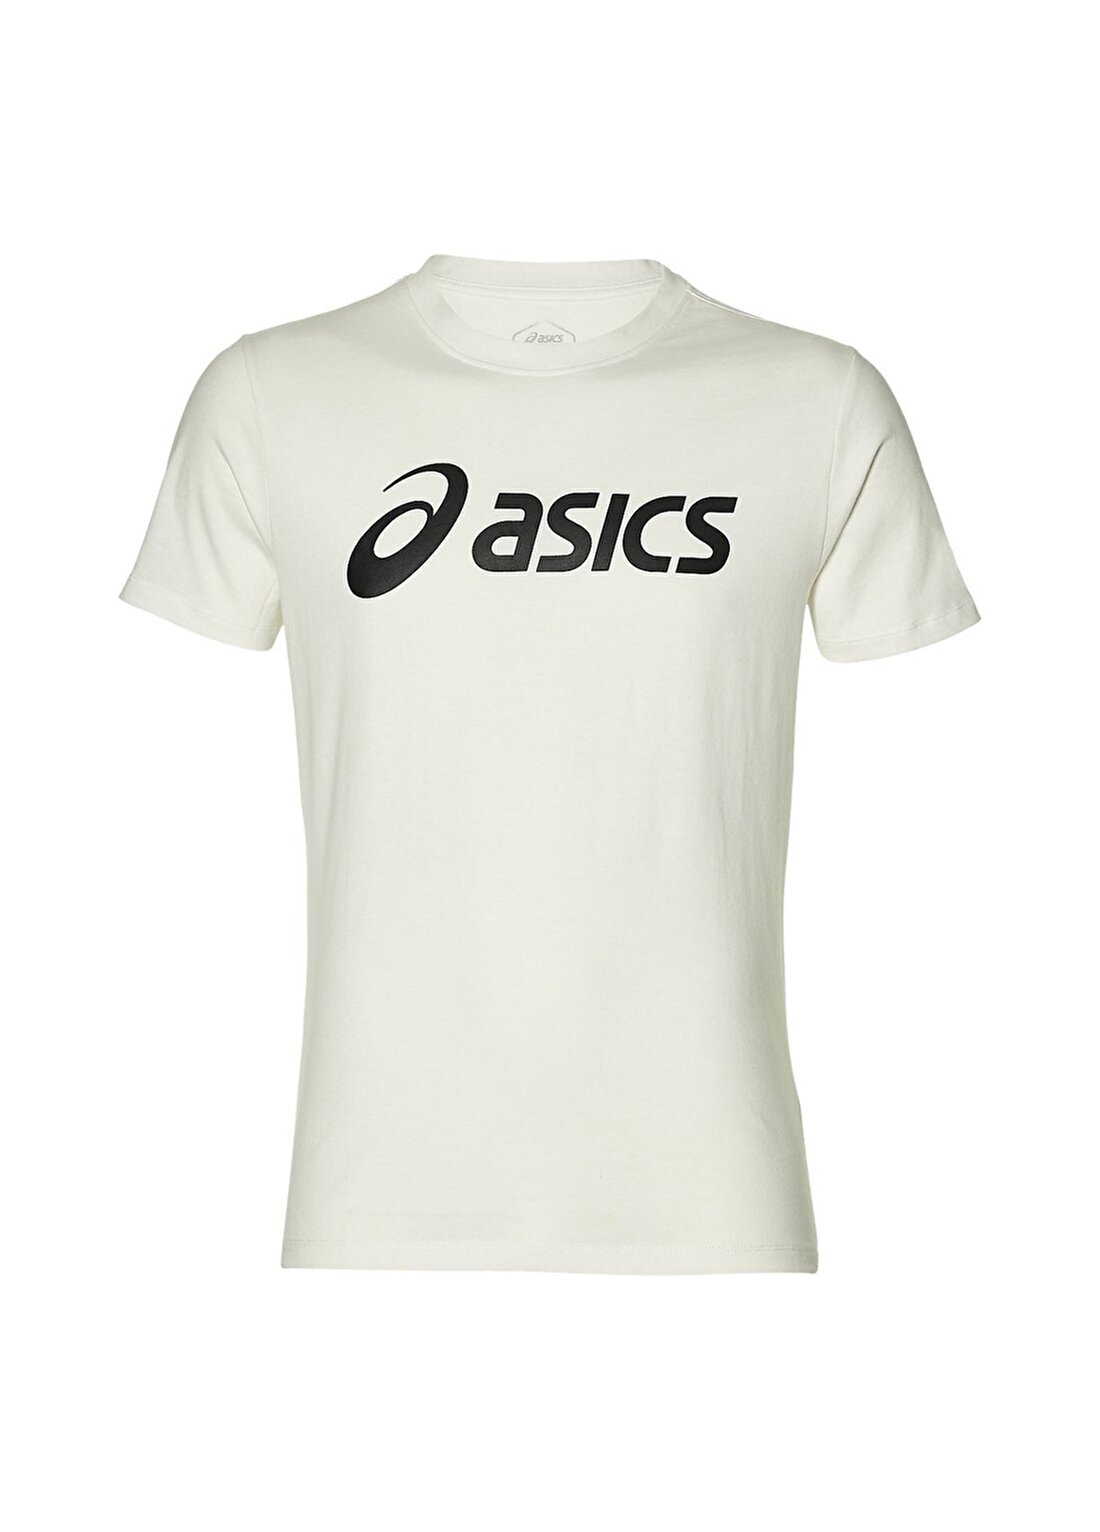 Asics Beyaz Erkek T-Shirt 2031A978-100 ASİCS BİG LOGO TEE